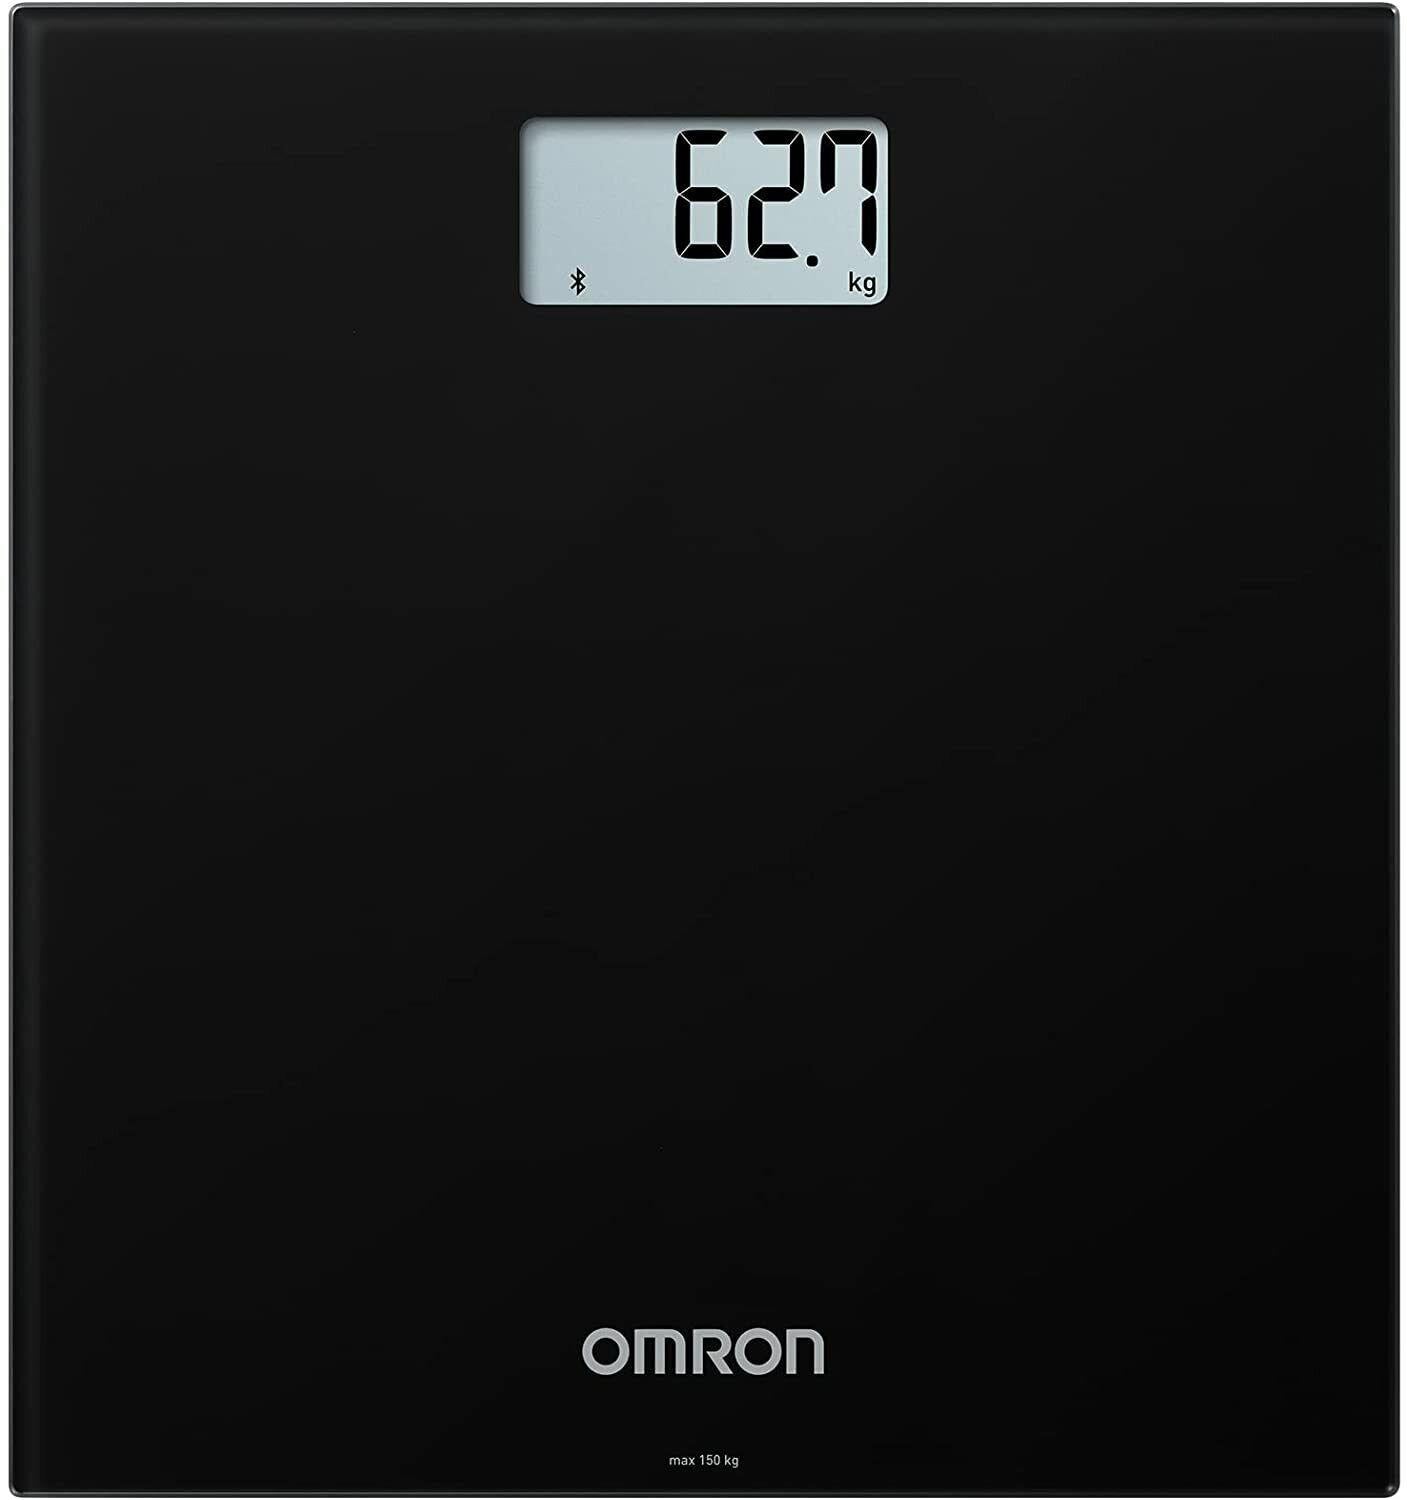 Omron Intelli IT Smart Bathroom Digital Scales for Body Weight HN300T2-EBK